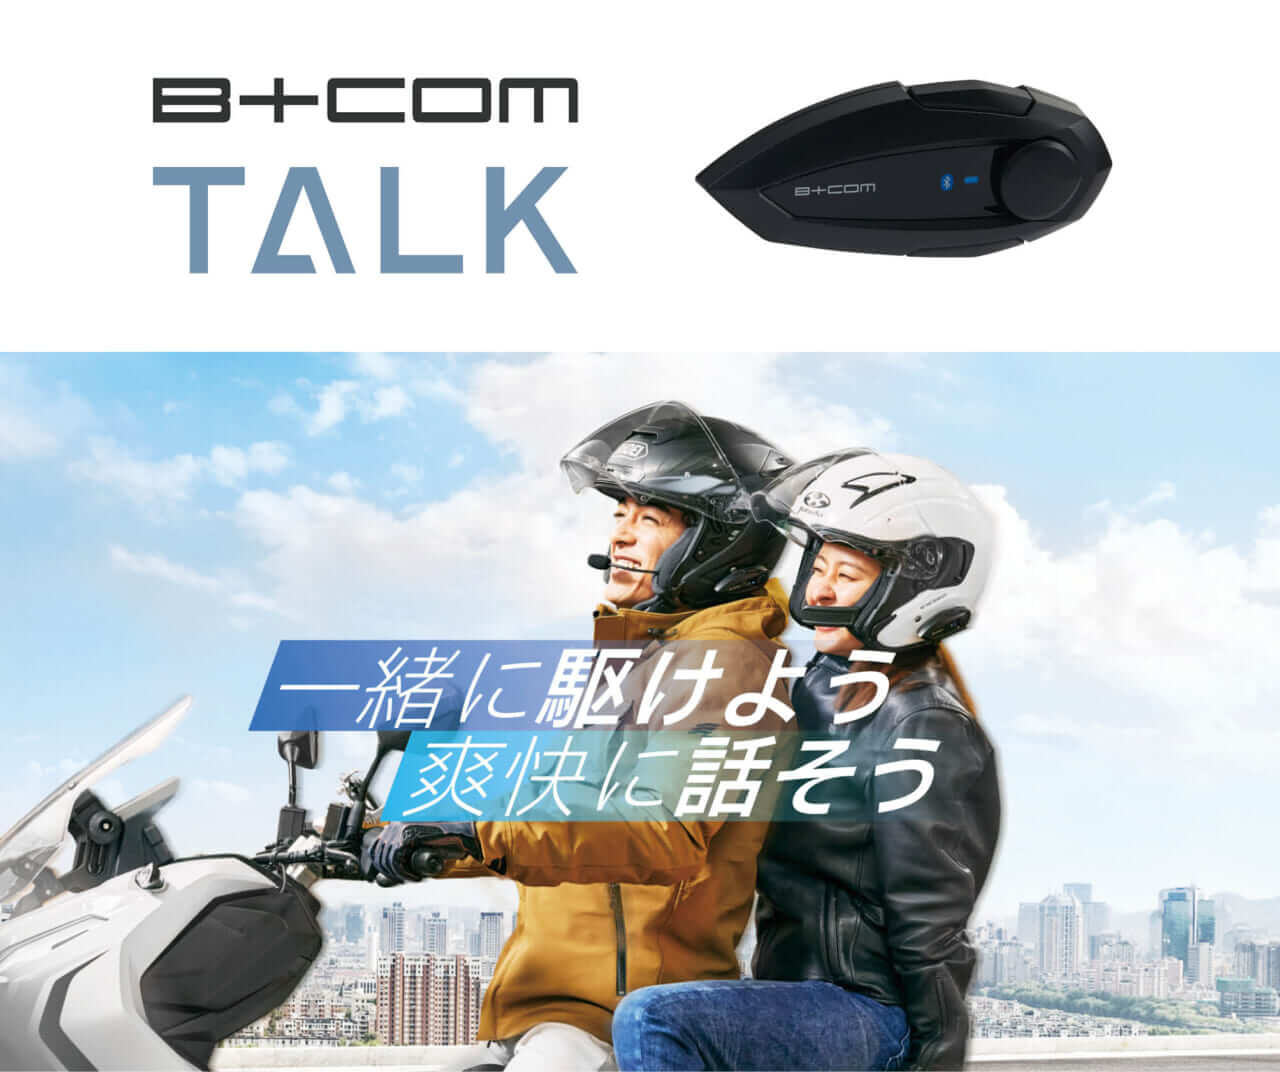 手軽に3人通話ができる】バイク用Bluetoothインカム「B＋COM TALK」が ...